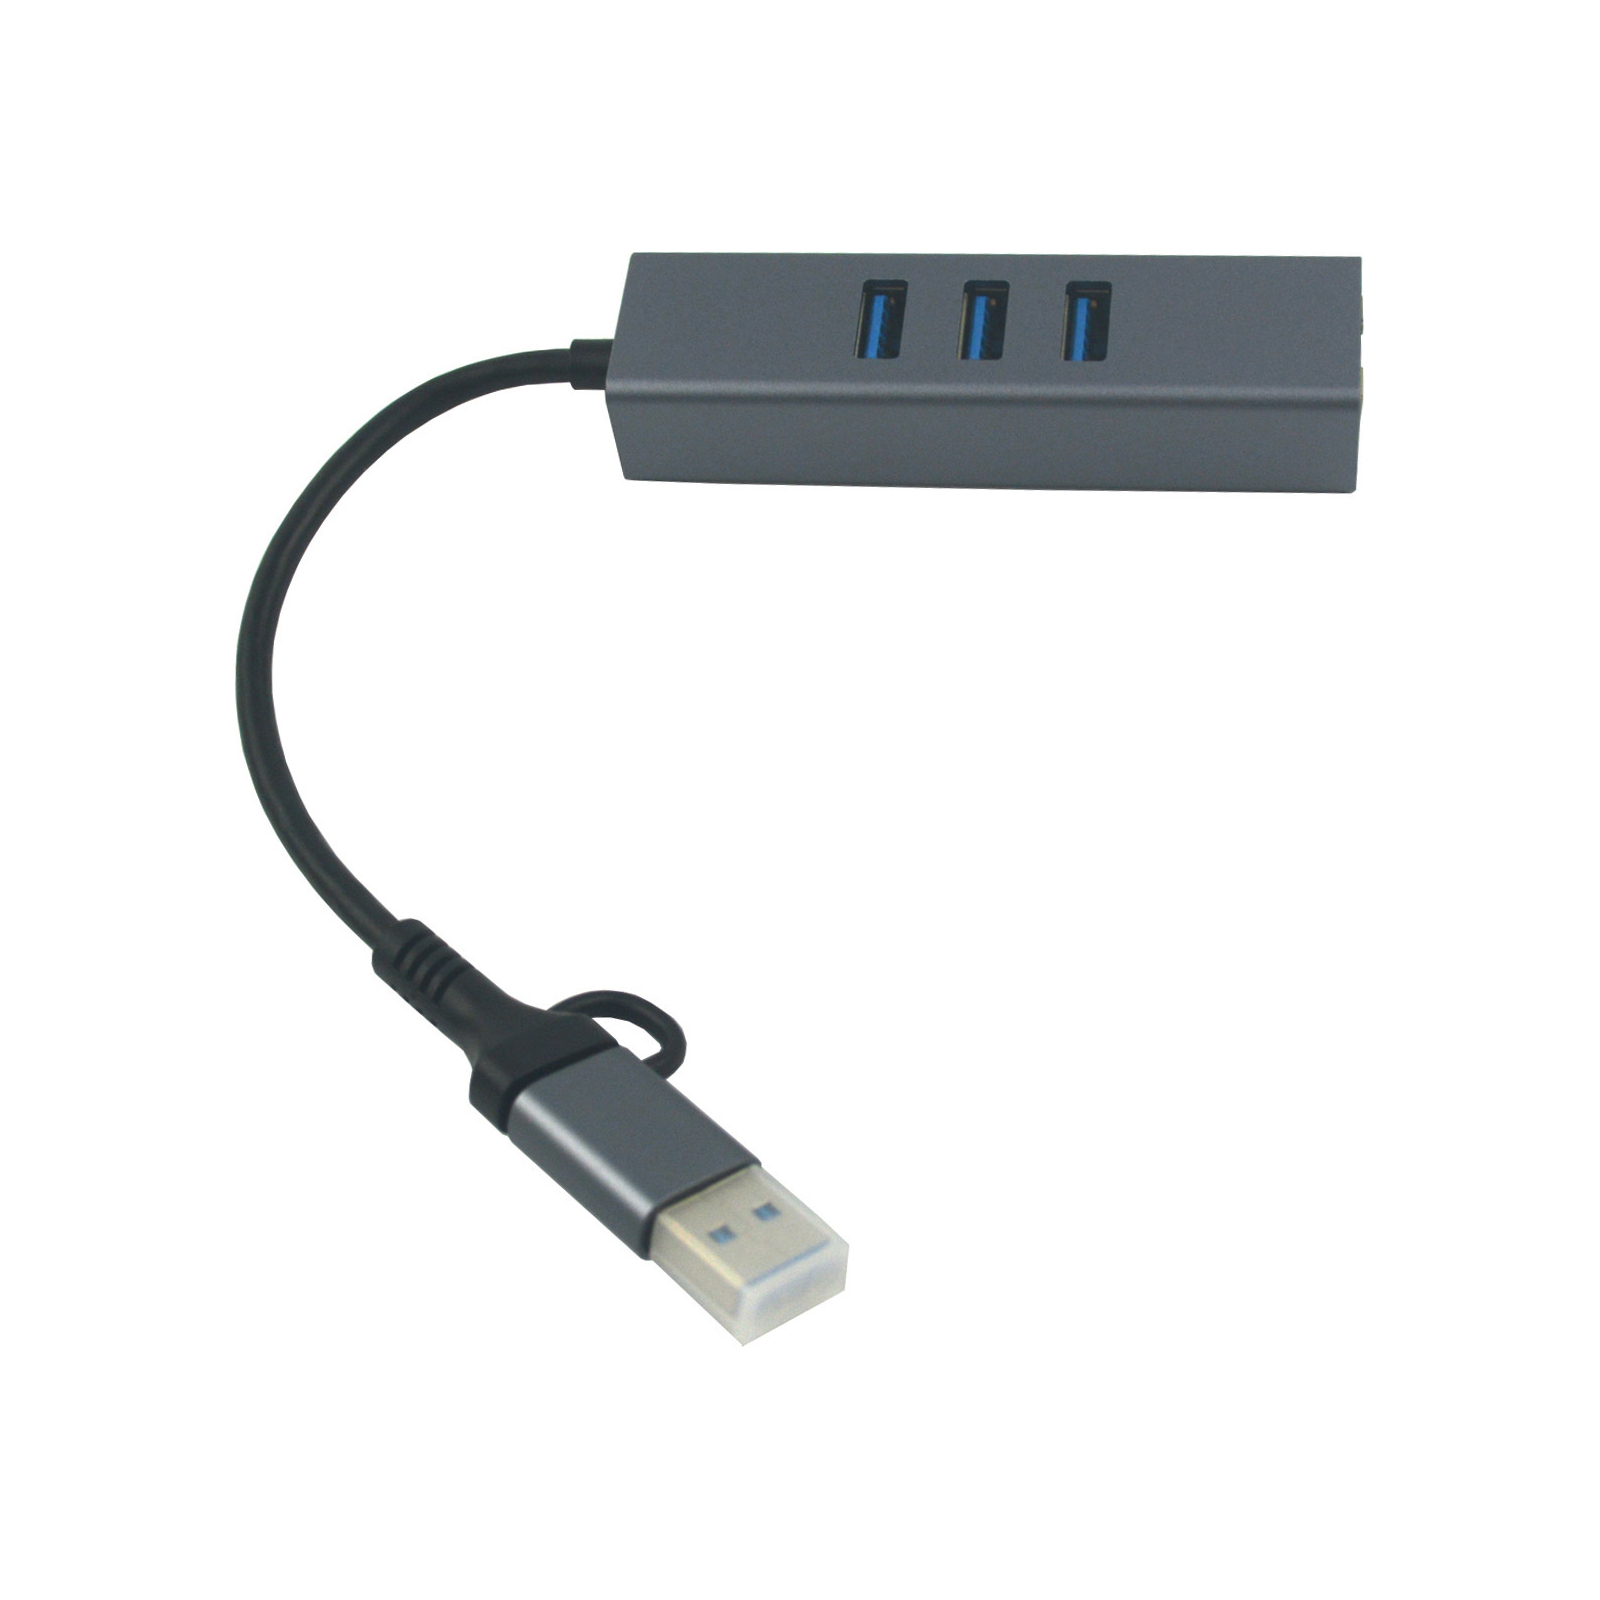 Концентратор USB 3.0 Type-C/Type-A to RJ45 Gigabit Lan, 3*USB 3.0, cable 13 cm Dynamode (DM-AD-GLAN-U3) зображення 3